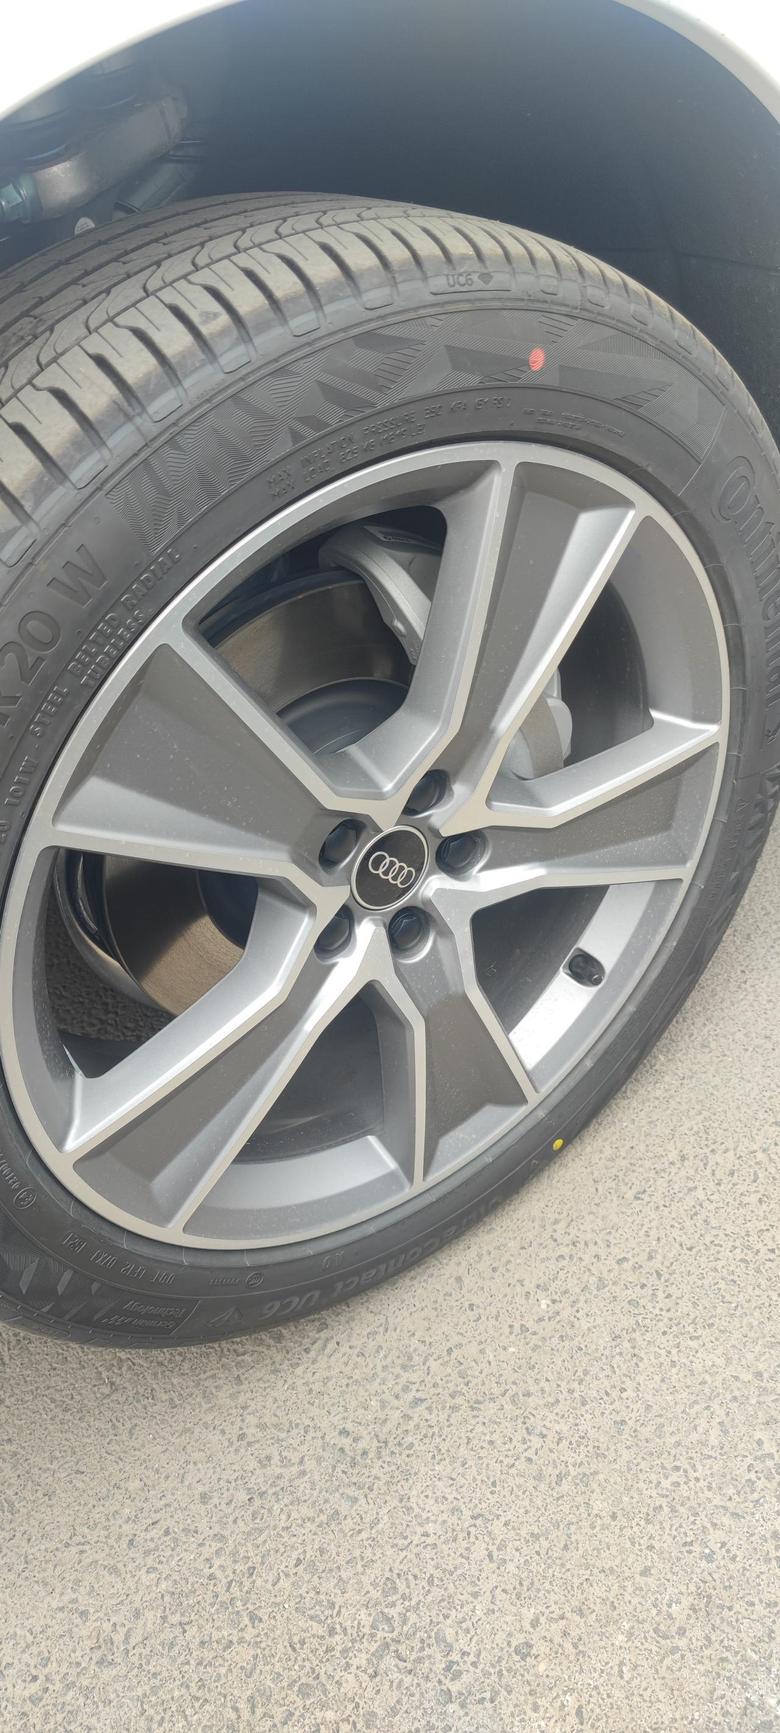 奥迪q5l 21款Q5L的轮胎为什么会有三种品牌？有倍耐力、米其林、马牌，大家提车时都是什么品牌的轮胎呀？我的是UC6钻石